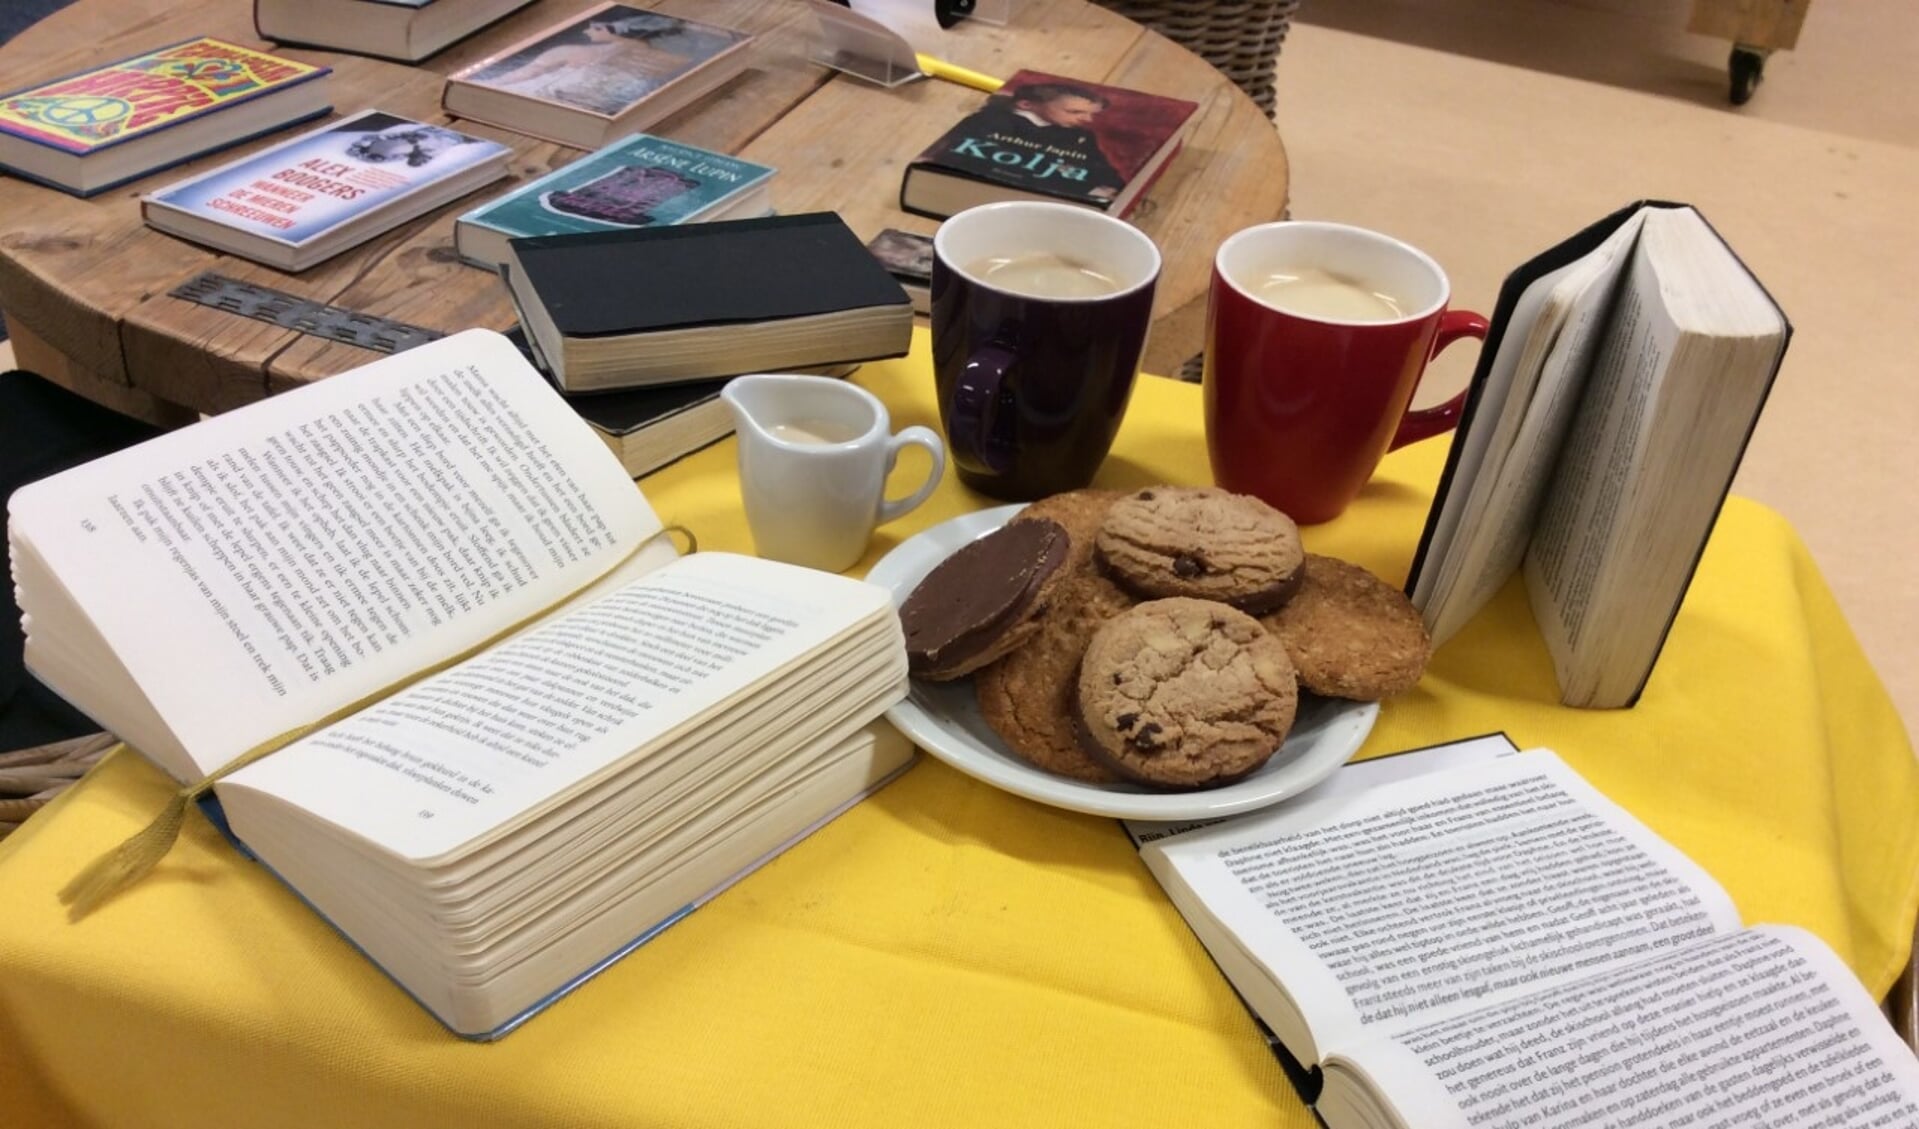 Koffie met een boekje, volgende week in de bibliotheek